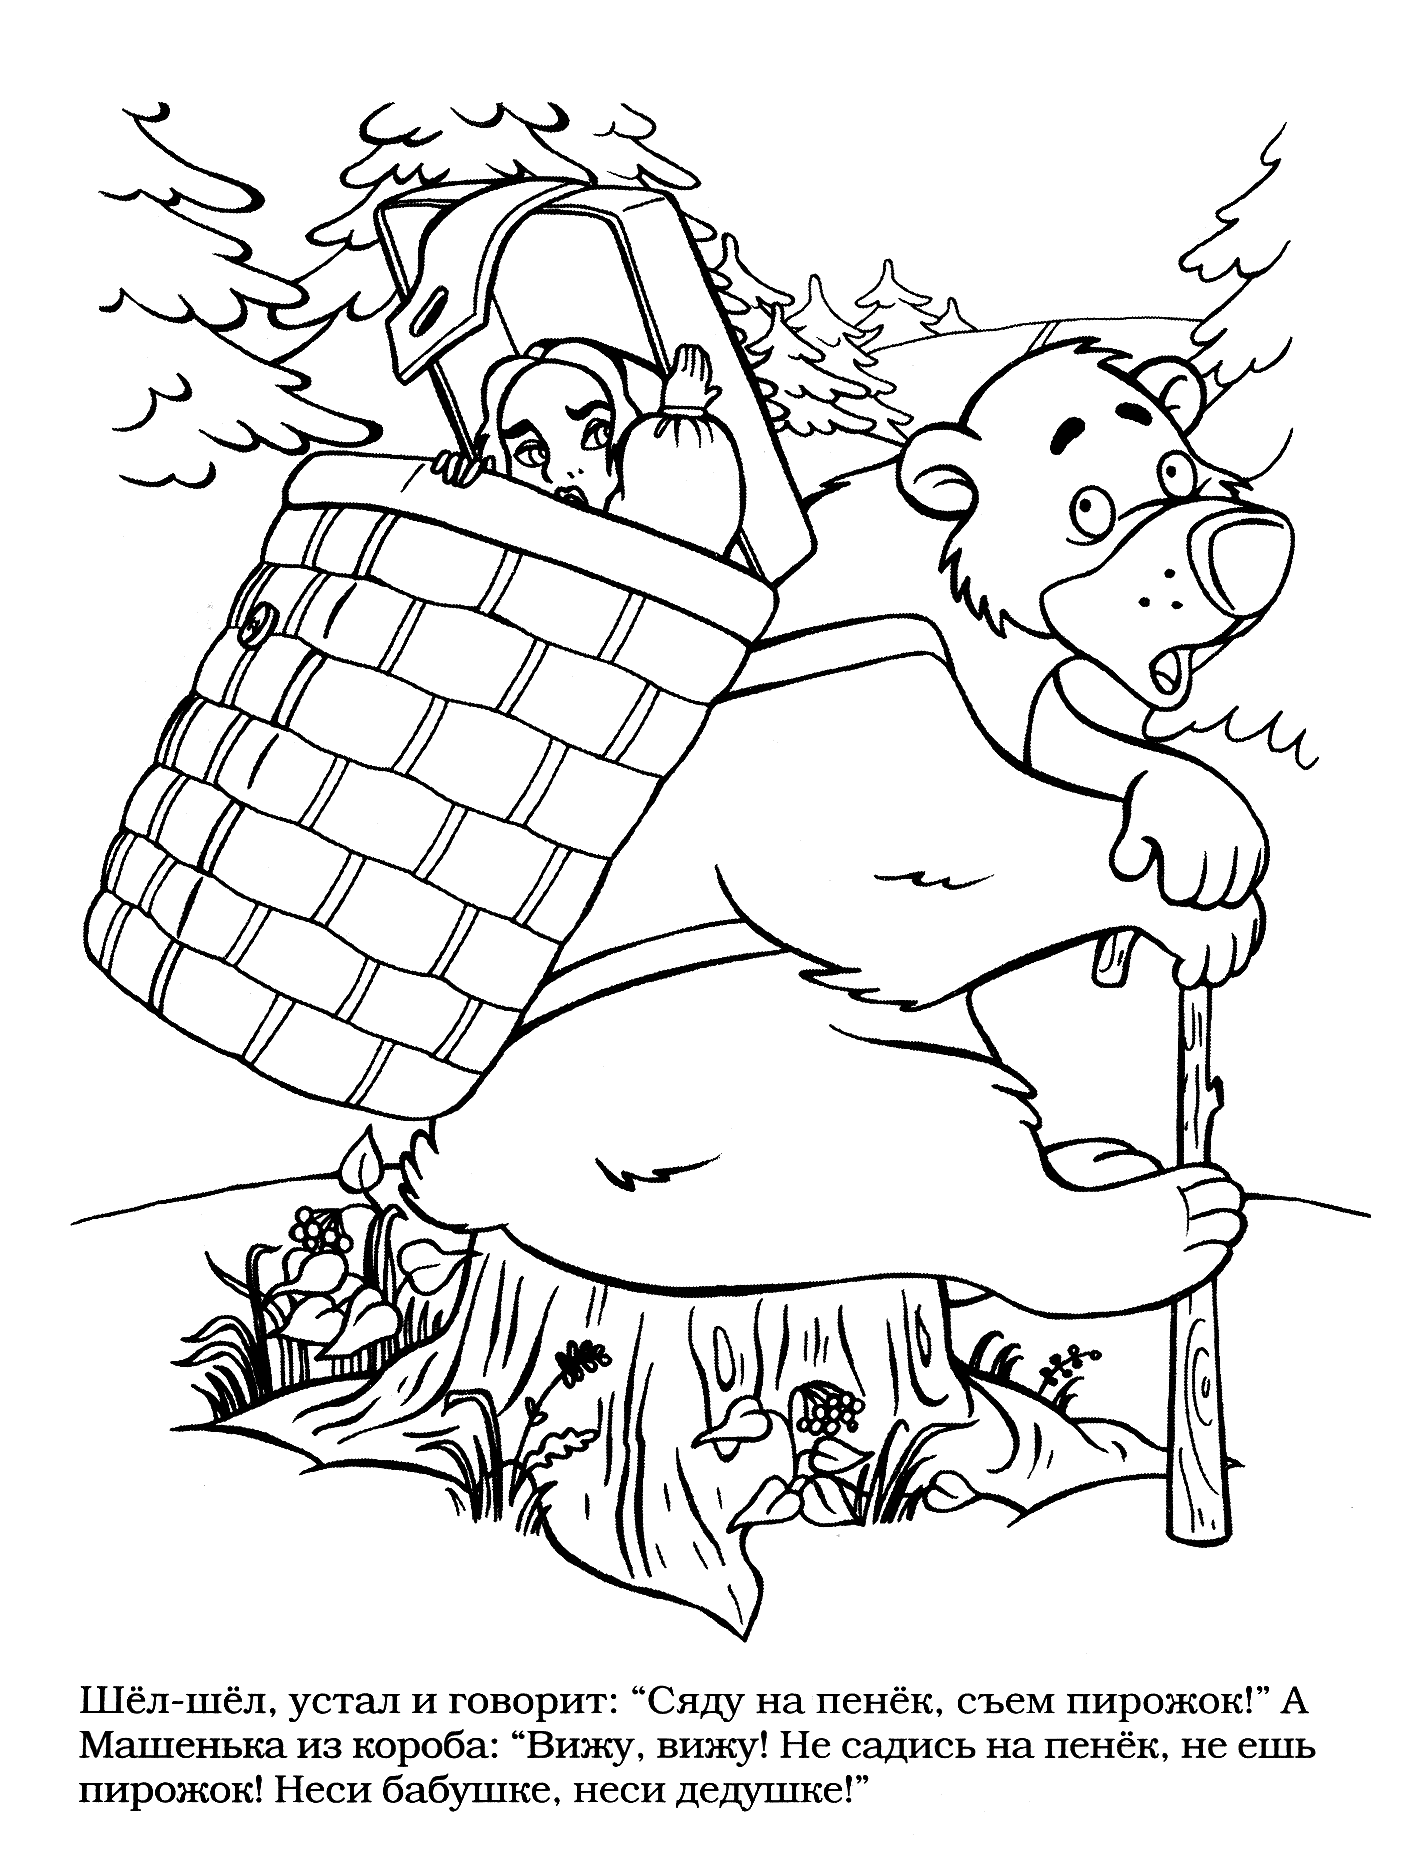 Розмальовки розмальовки до казки маша і ведмідь маша в коробі з ведмедем, розфарбування маша і ведмідь